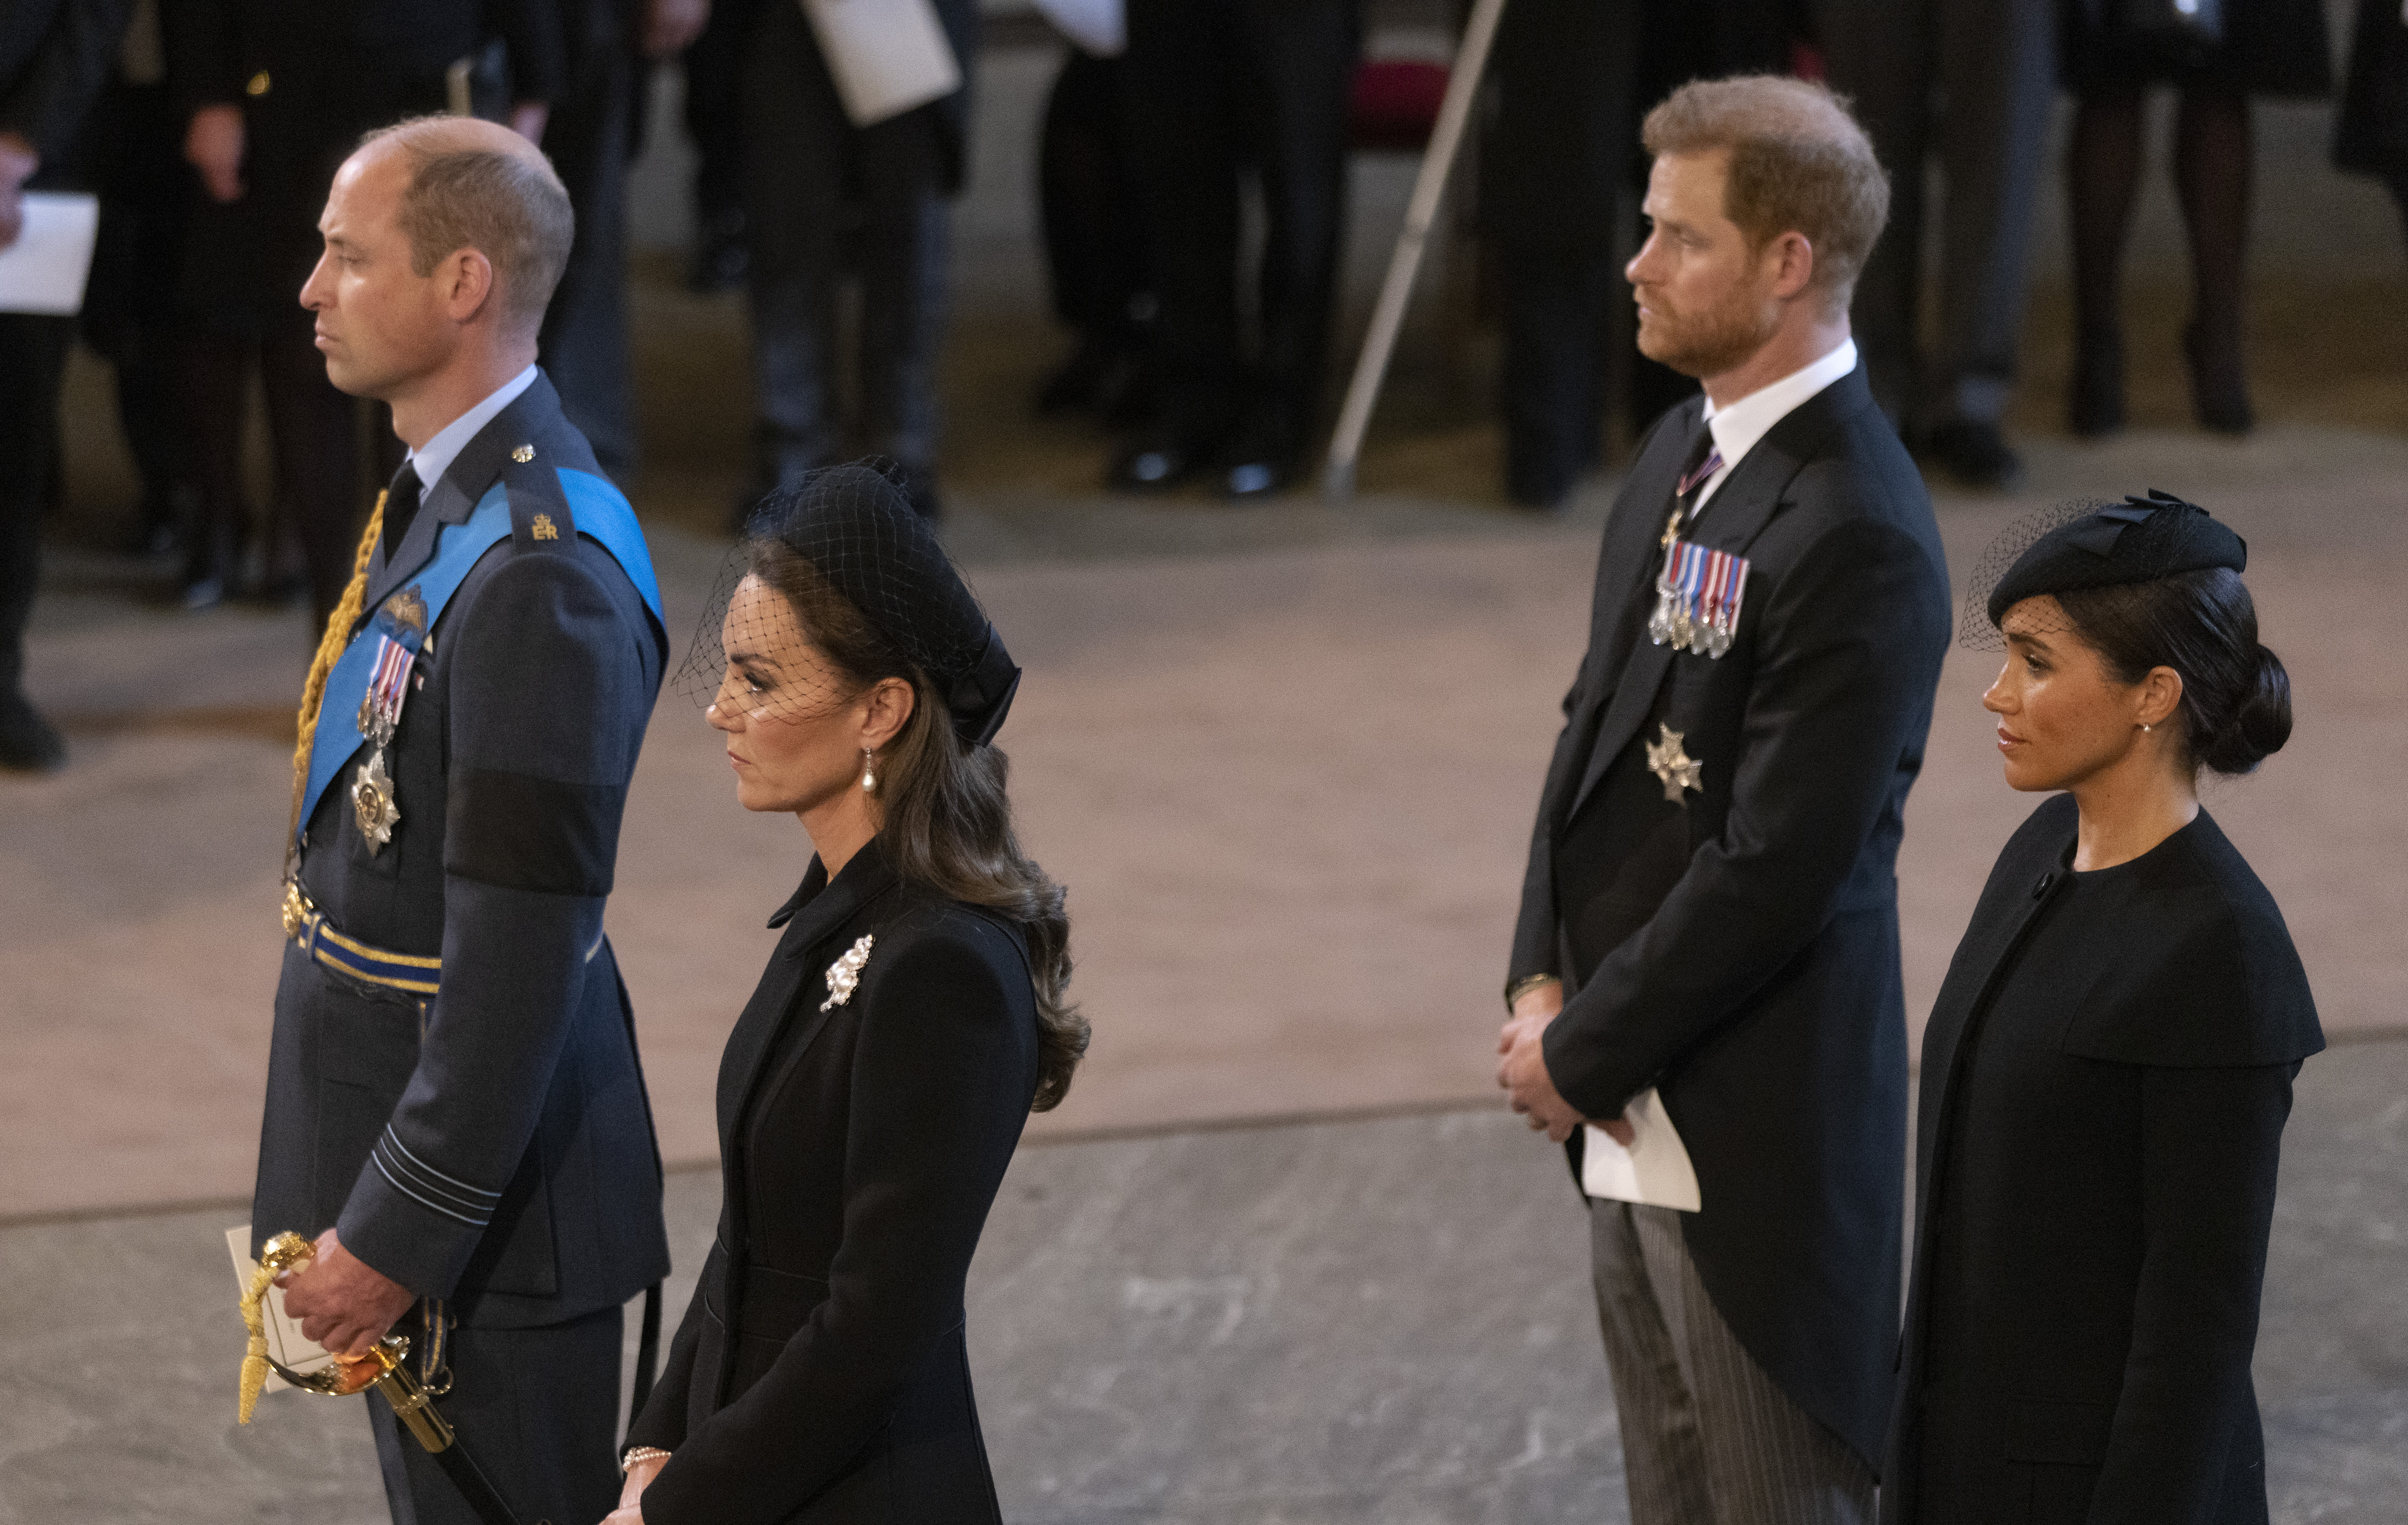 Prinz William, Prinzessin Catherine, Prinz Harry und Meghan Markle während des Staatsbegräbnisses von Königin Elizabeth II. in der Westminster Abbey am 19. September 2022 in London, England | Quelle: Getty Images